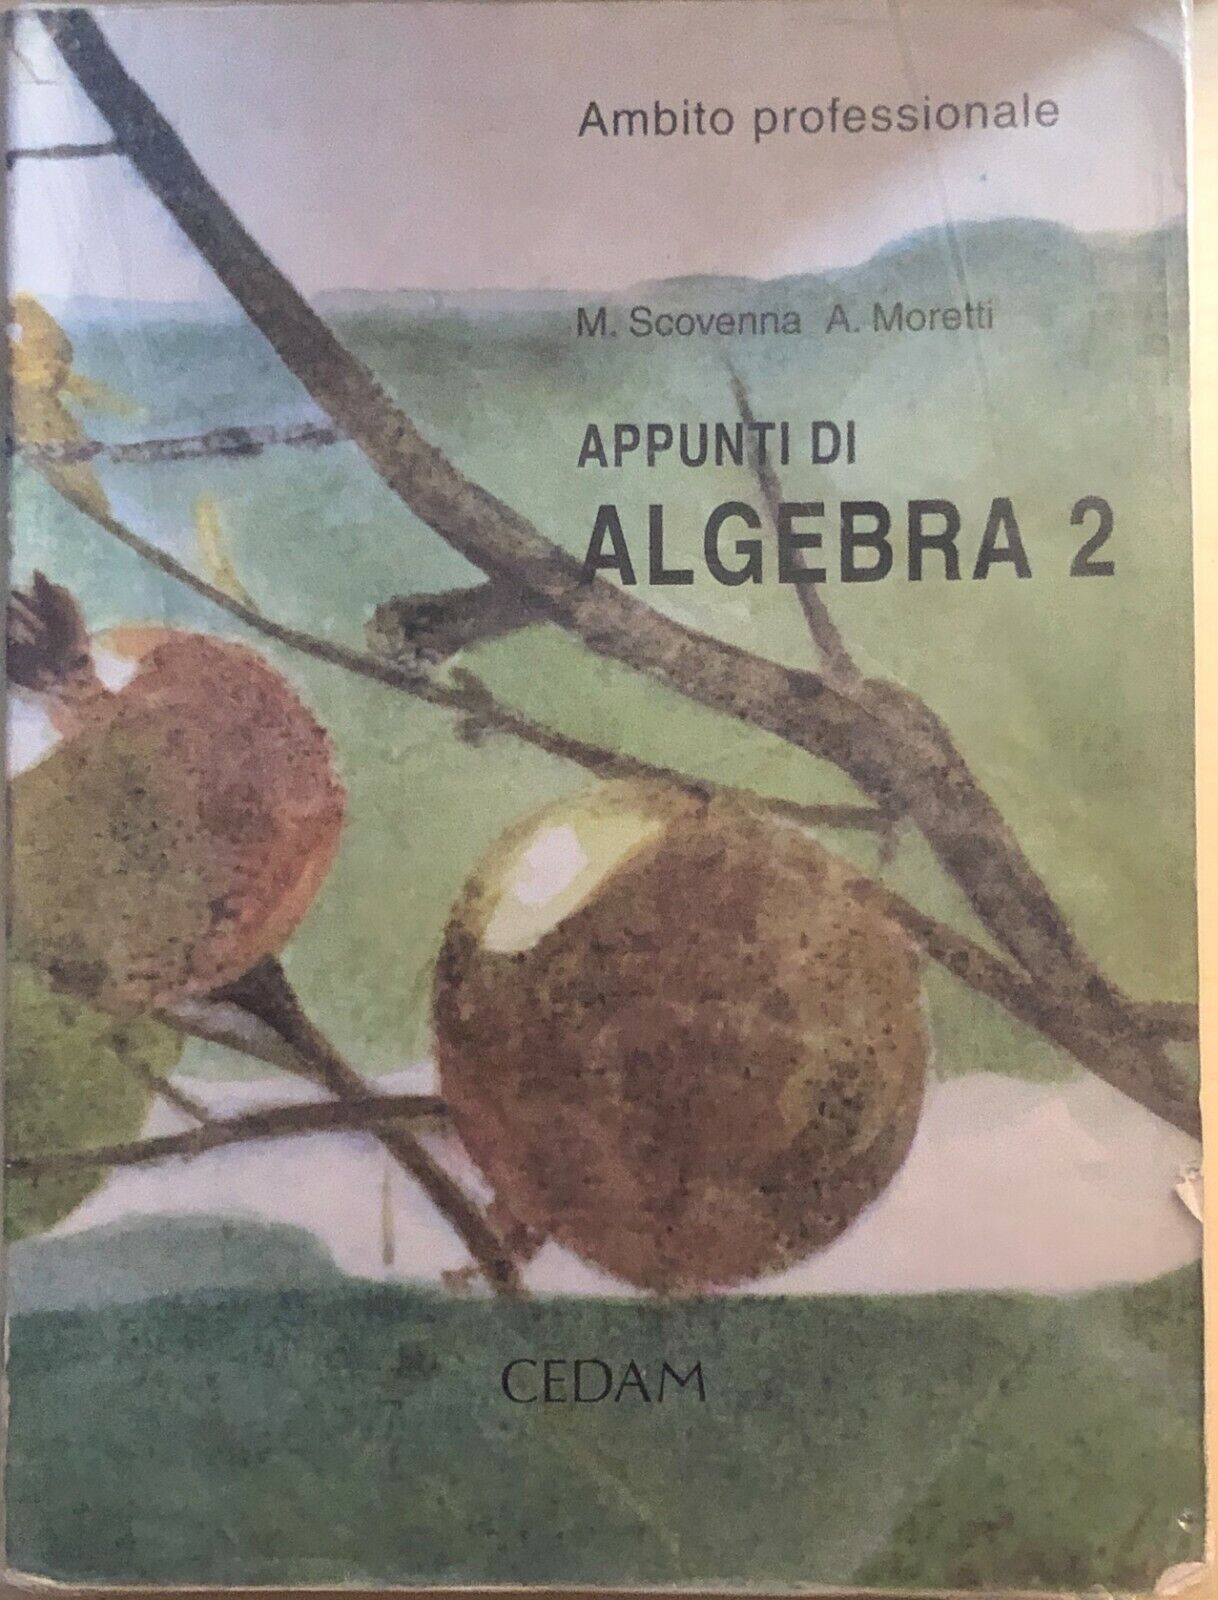 Appunti di algebra 2 di AA.VV., 2002, CEDAM